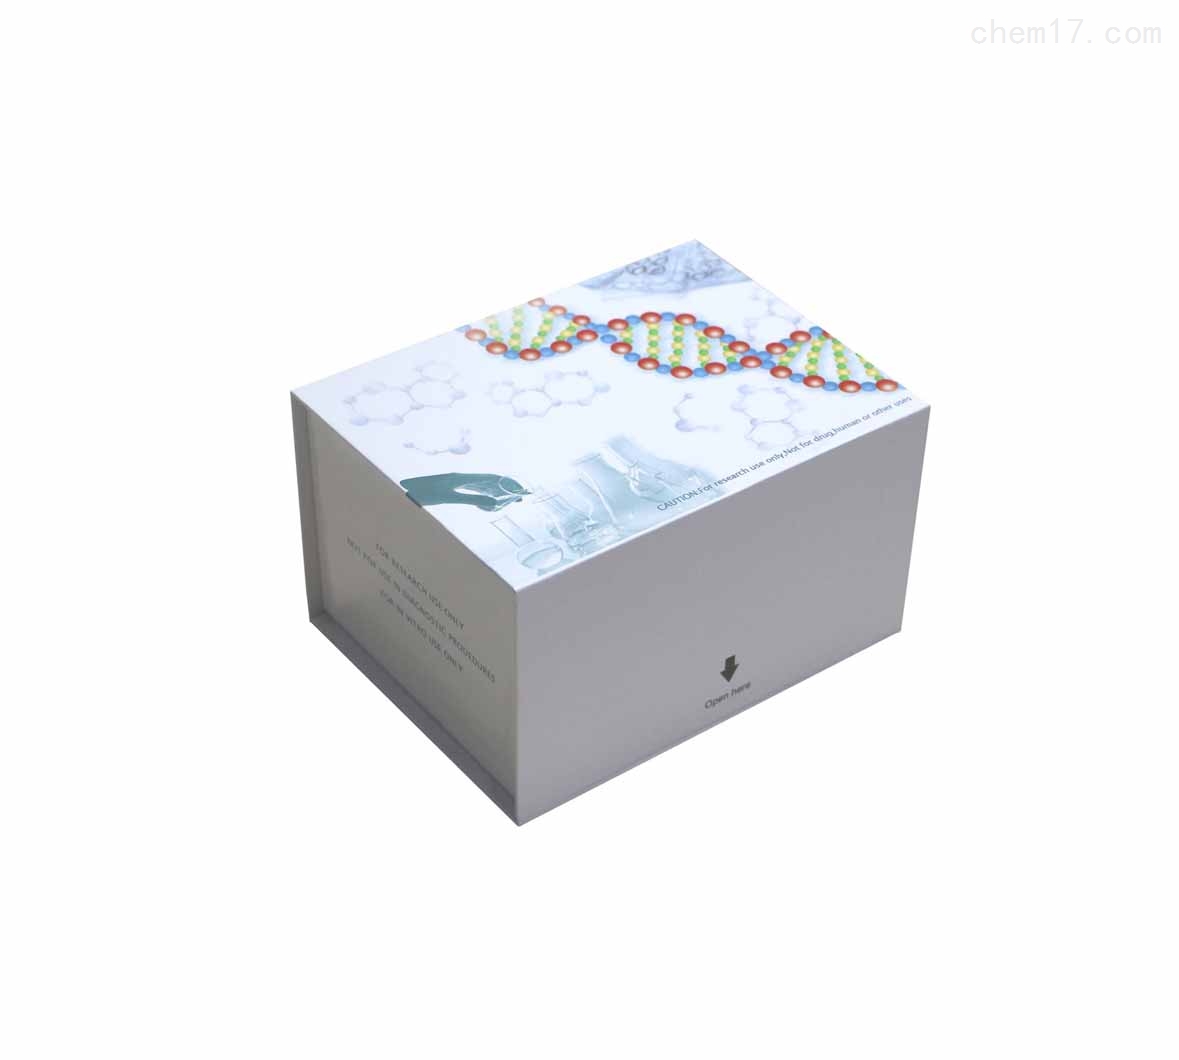 人长激素释放肽(Ghrelin)ELISA试剂盒质量保证